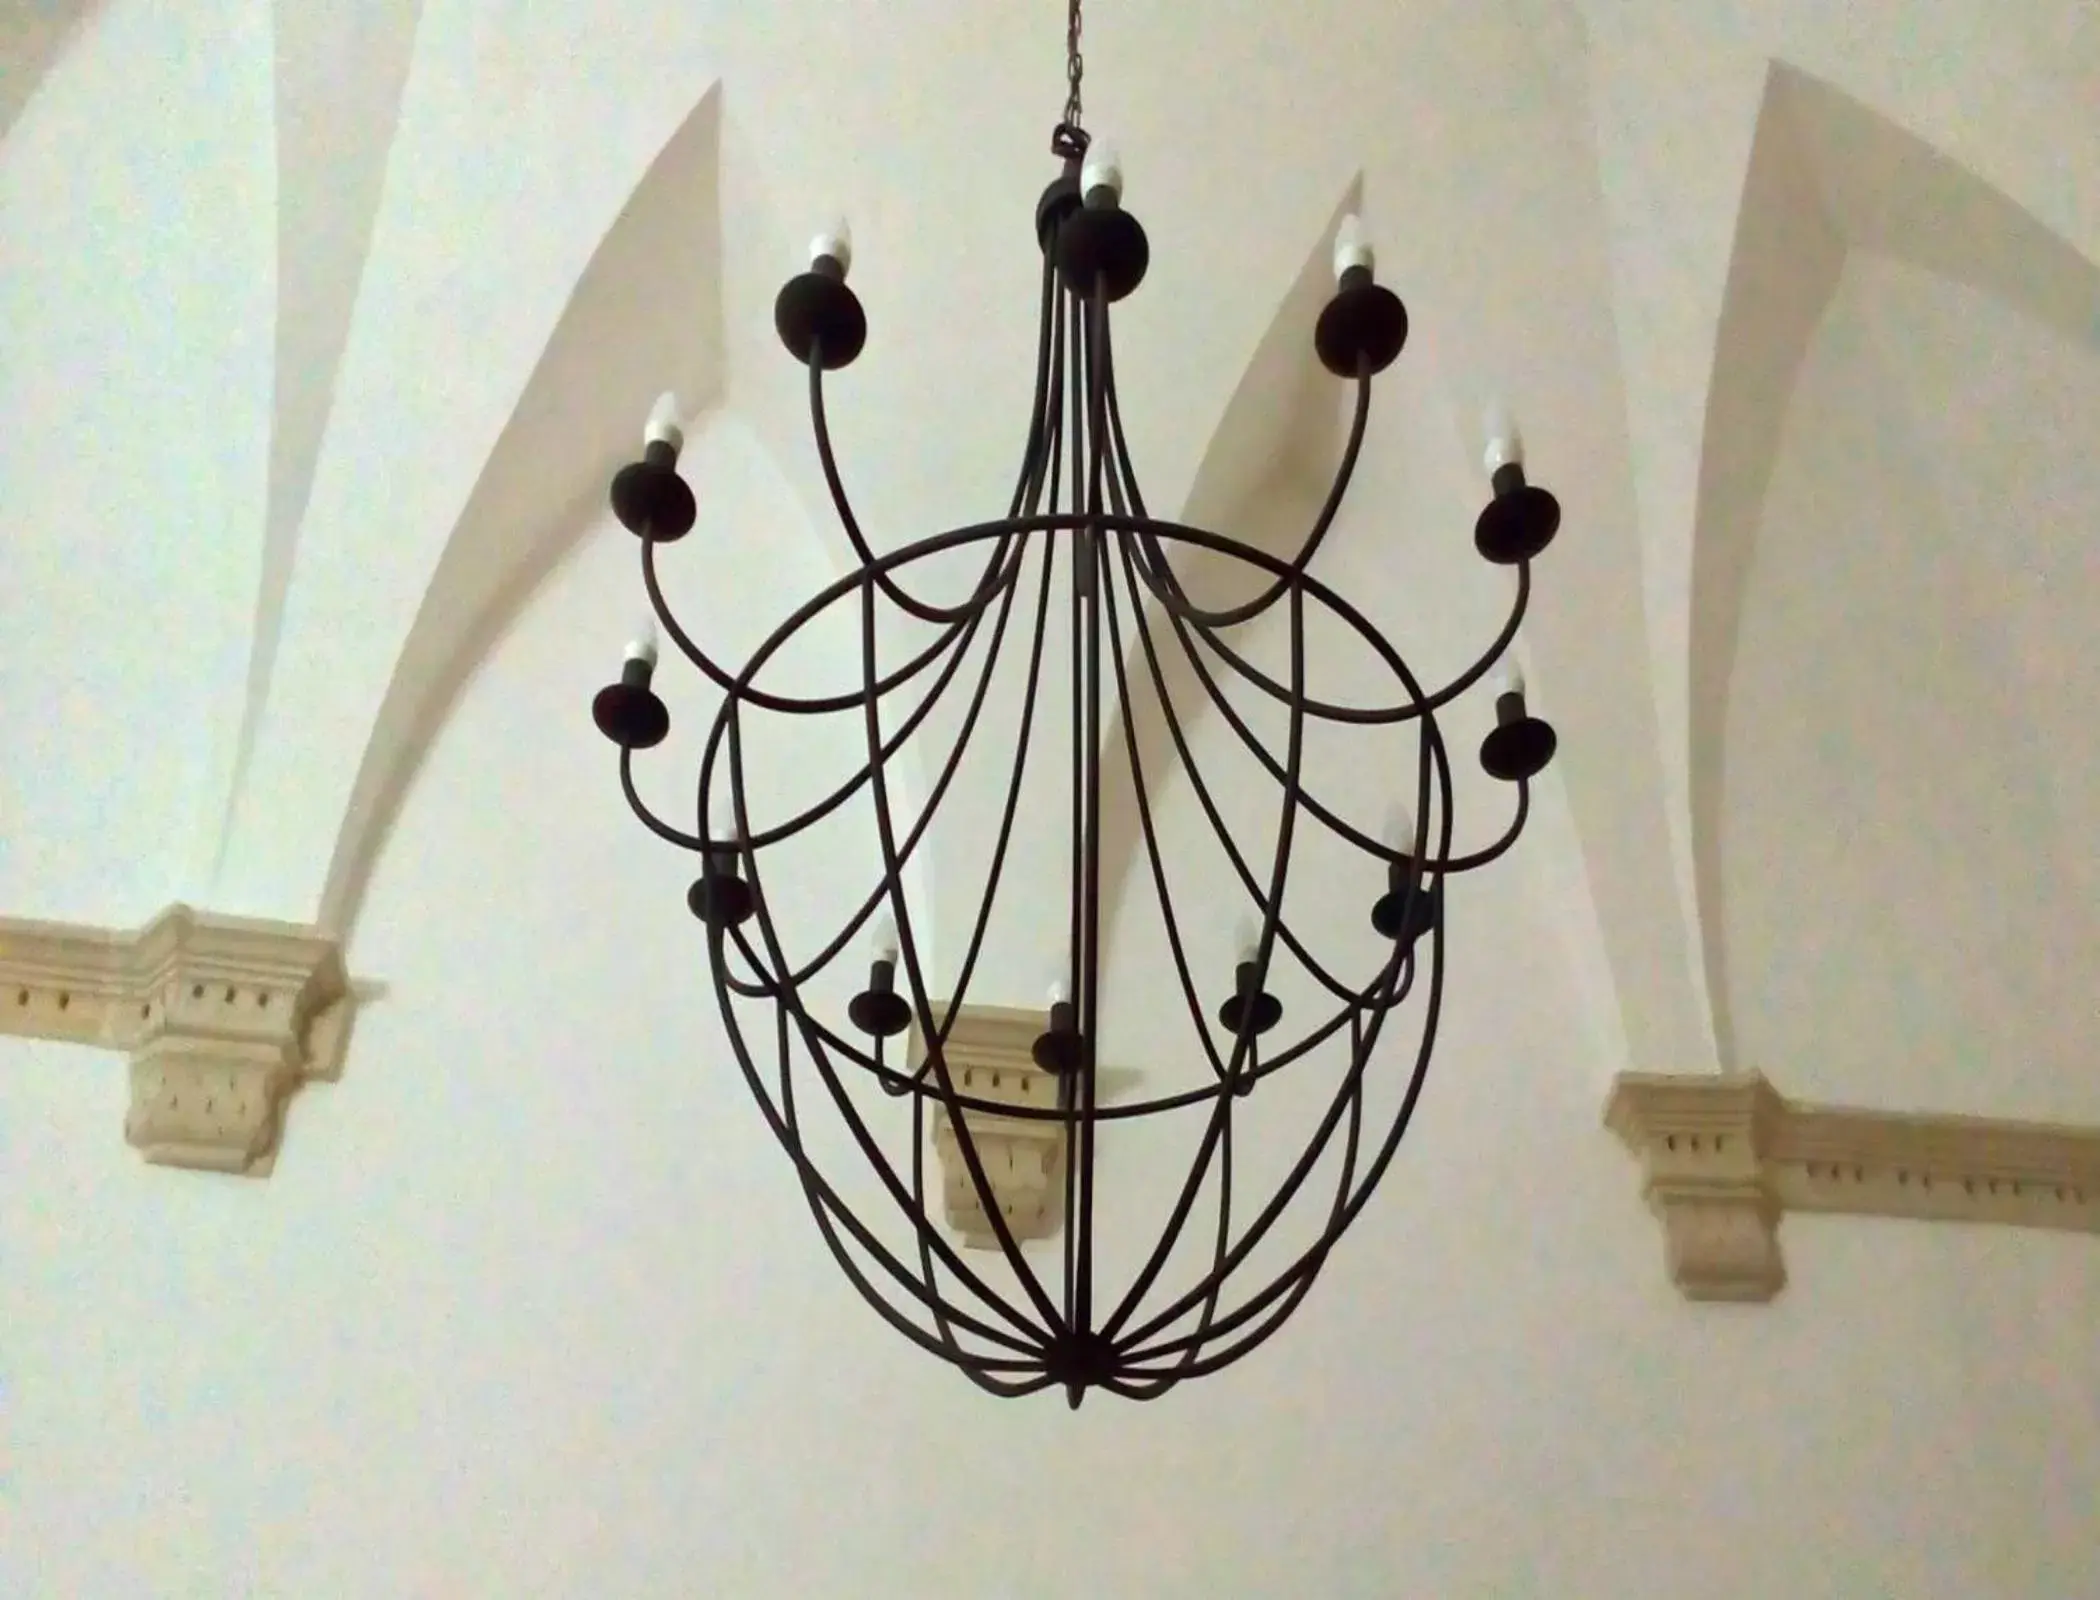 Decorative detail in Palazzo Cavoti